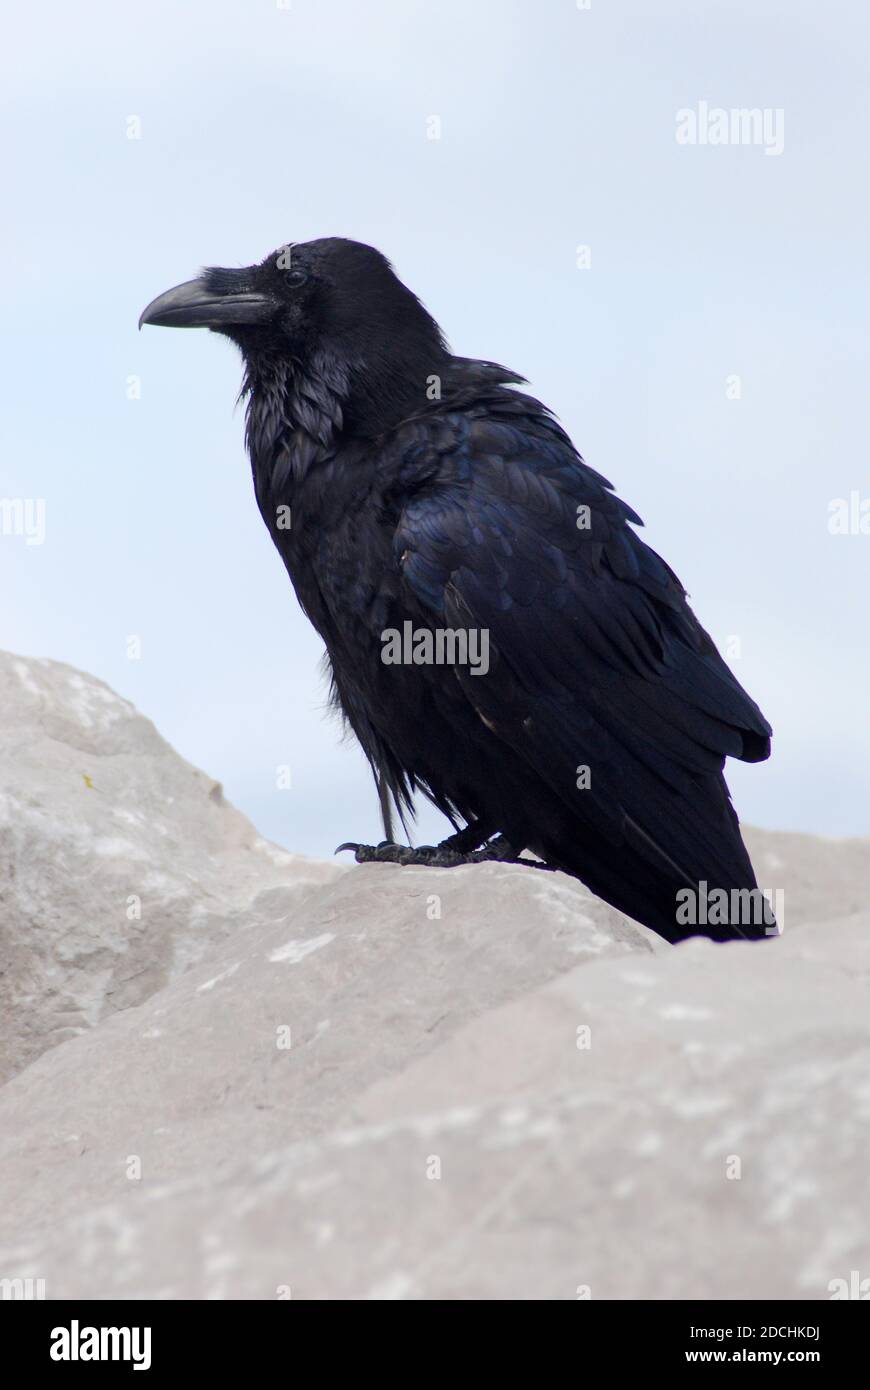 Nahaufnahme eines Raben (Corvus corax), der auf einem Felsen steht. Auch bekannt als der westliche Rabe oder nördlicher Rabe, ist dies ein großer schwarzer Singvogel. Stockfoto